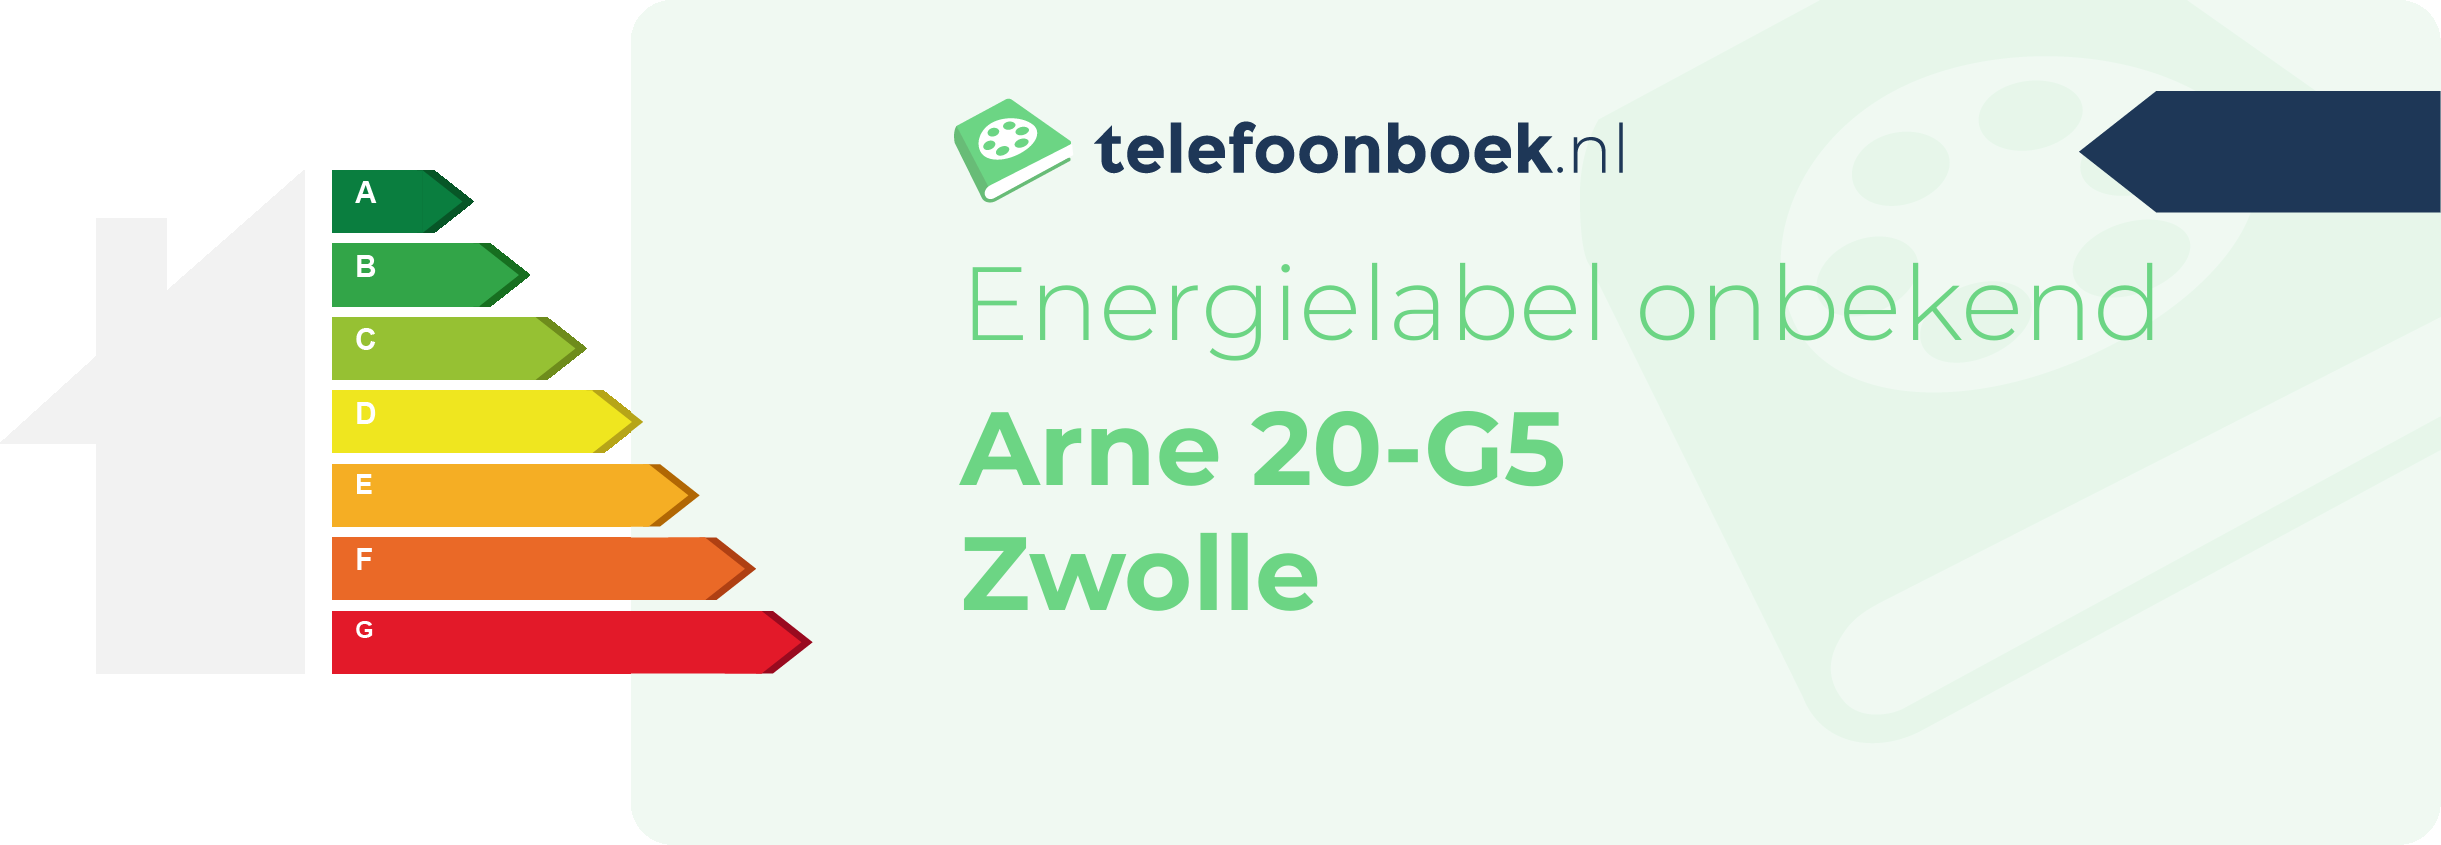 Energielabel Arne 20-G5 Zwolle